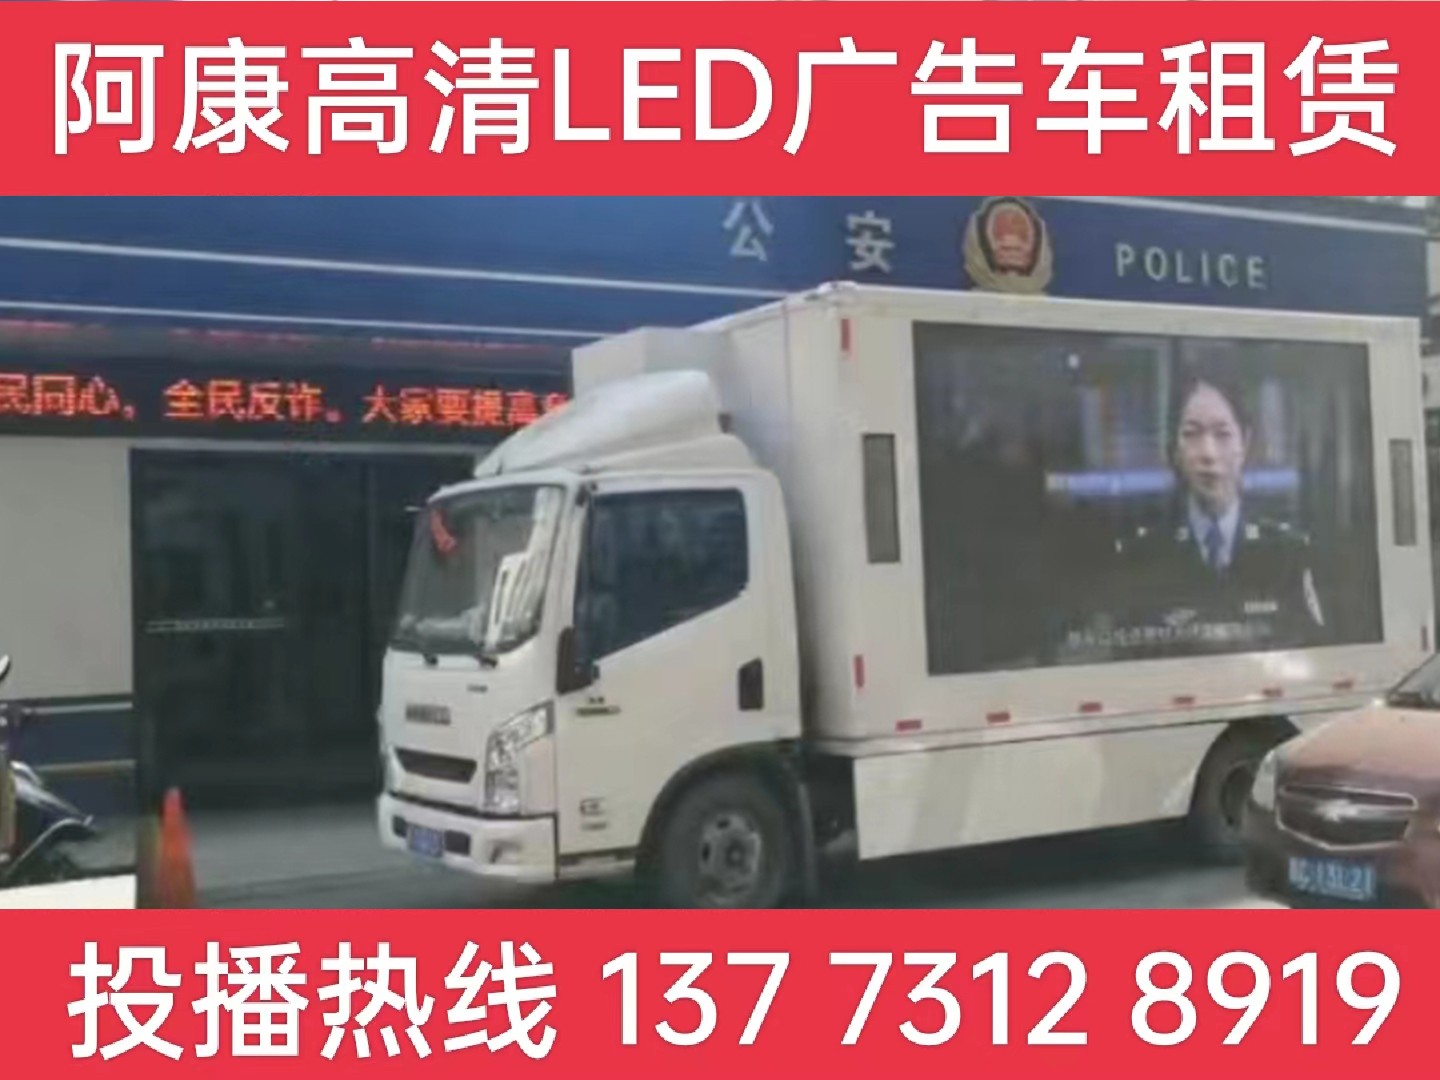 金坛LED广告车租赁-反诈宣传